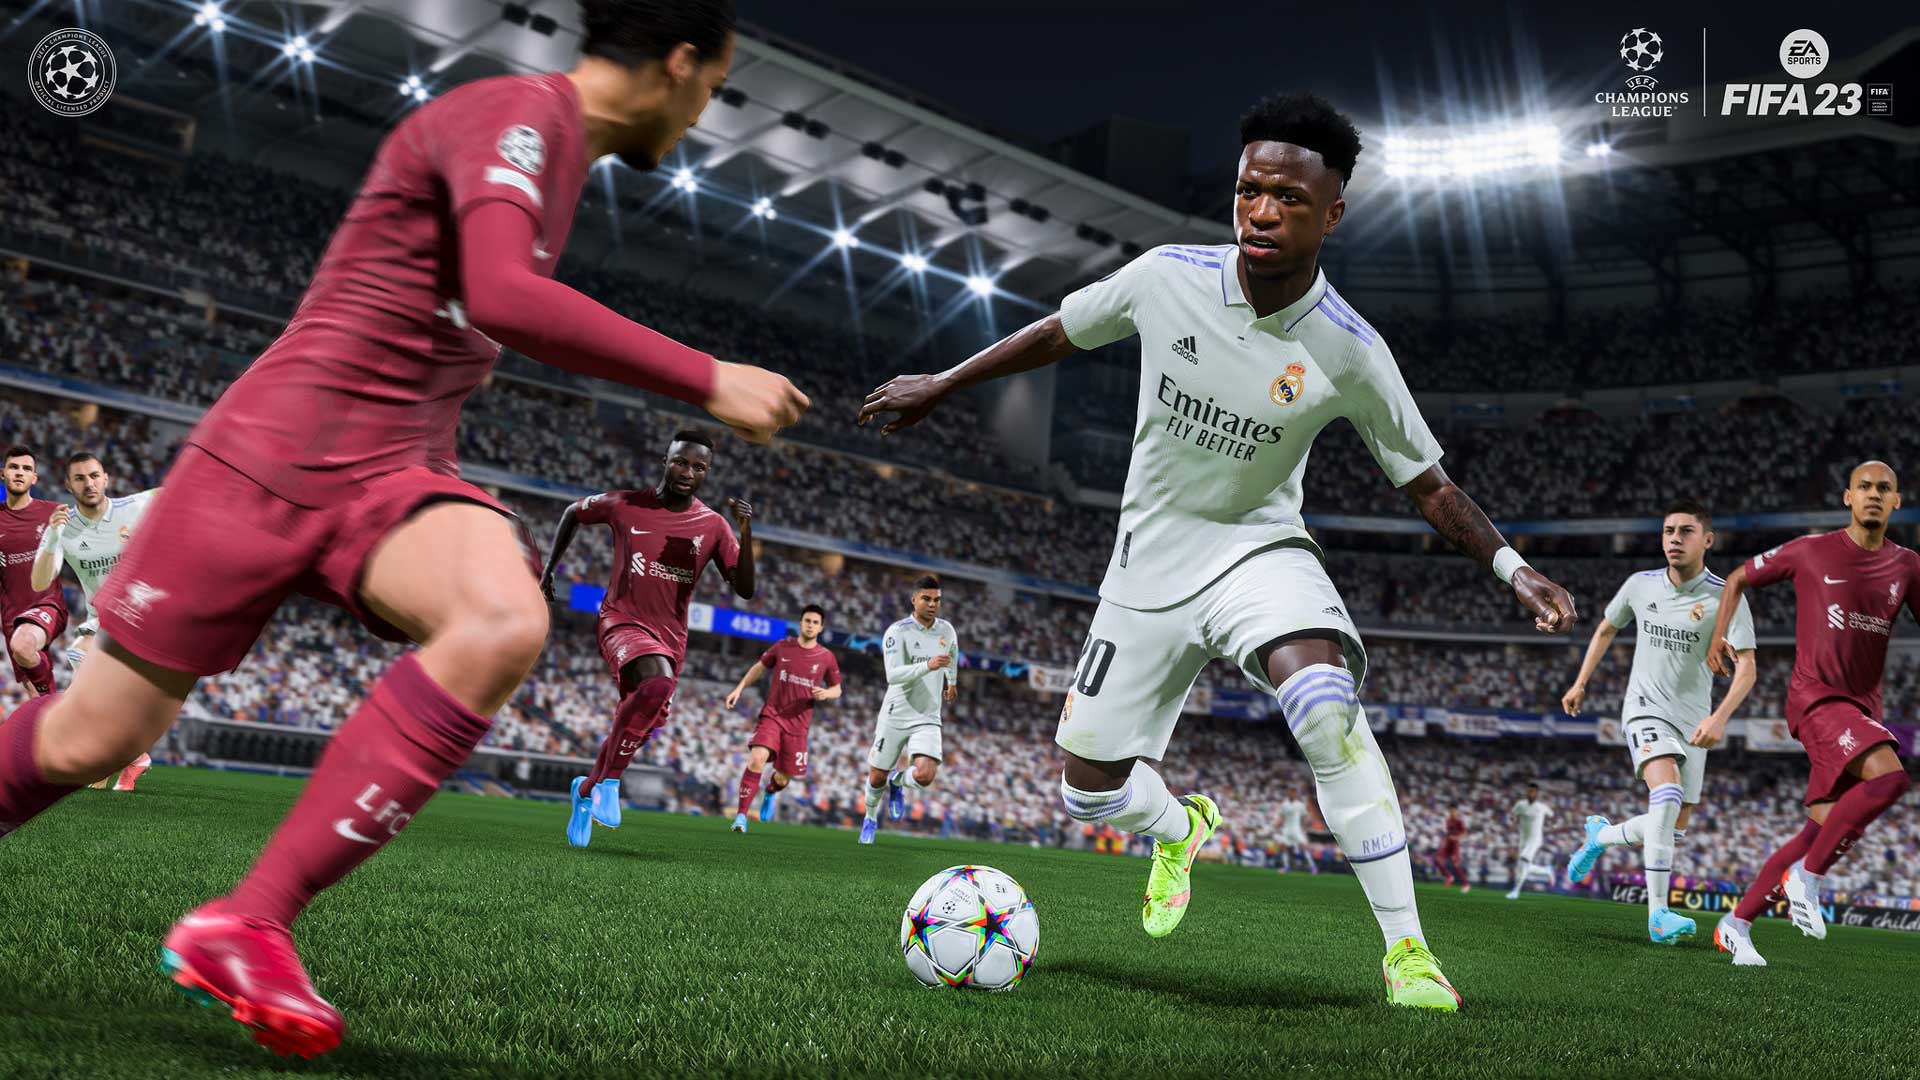 سیستم جدید دریبل و شوت در تریلر گیم پلی بازی FIFA 23